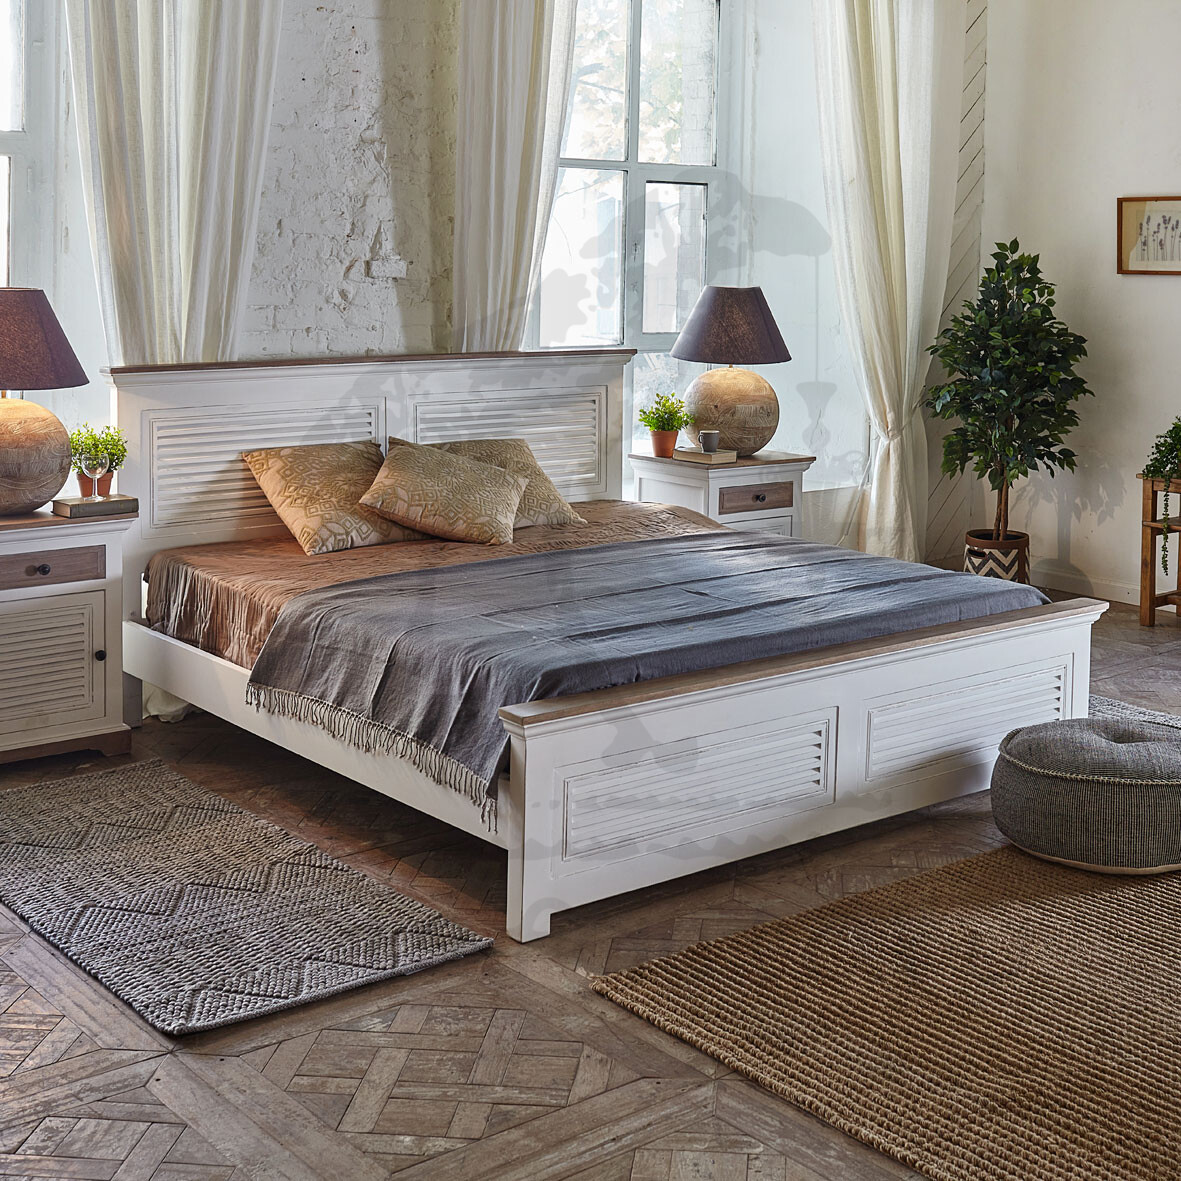 Белая деревянная двуспальная кровать в стиле прованс